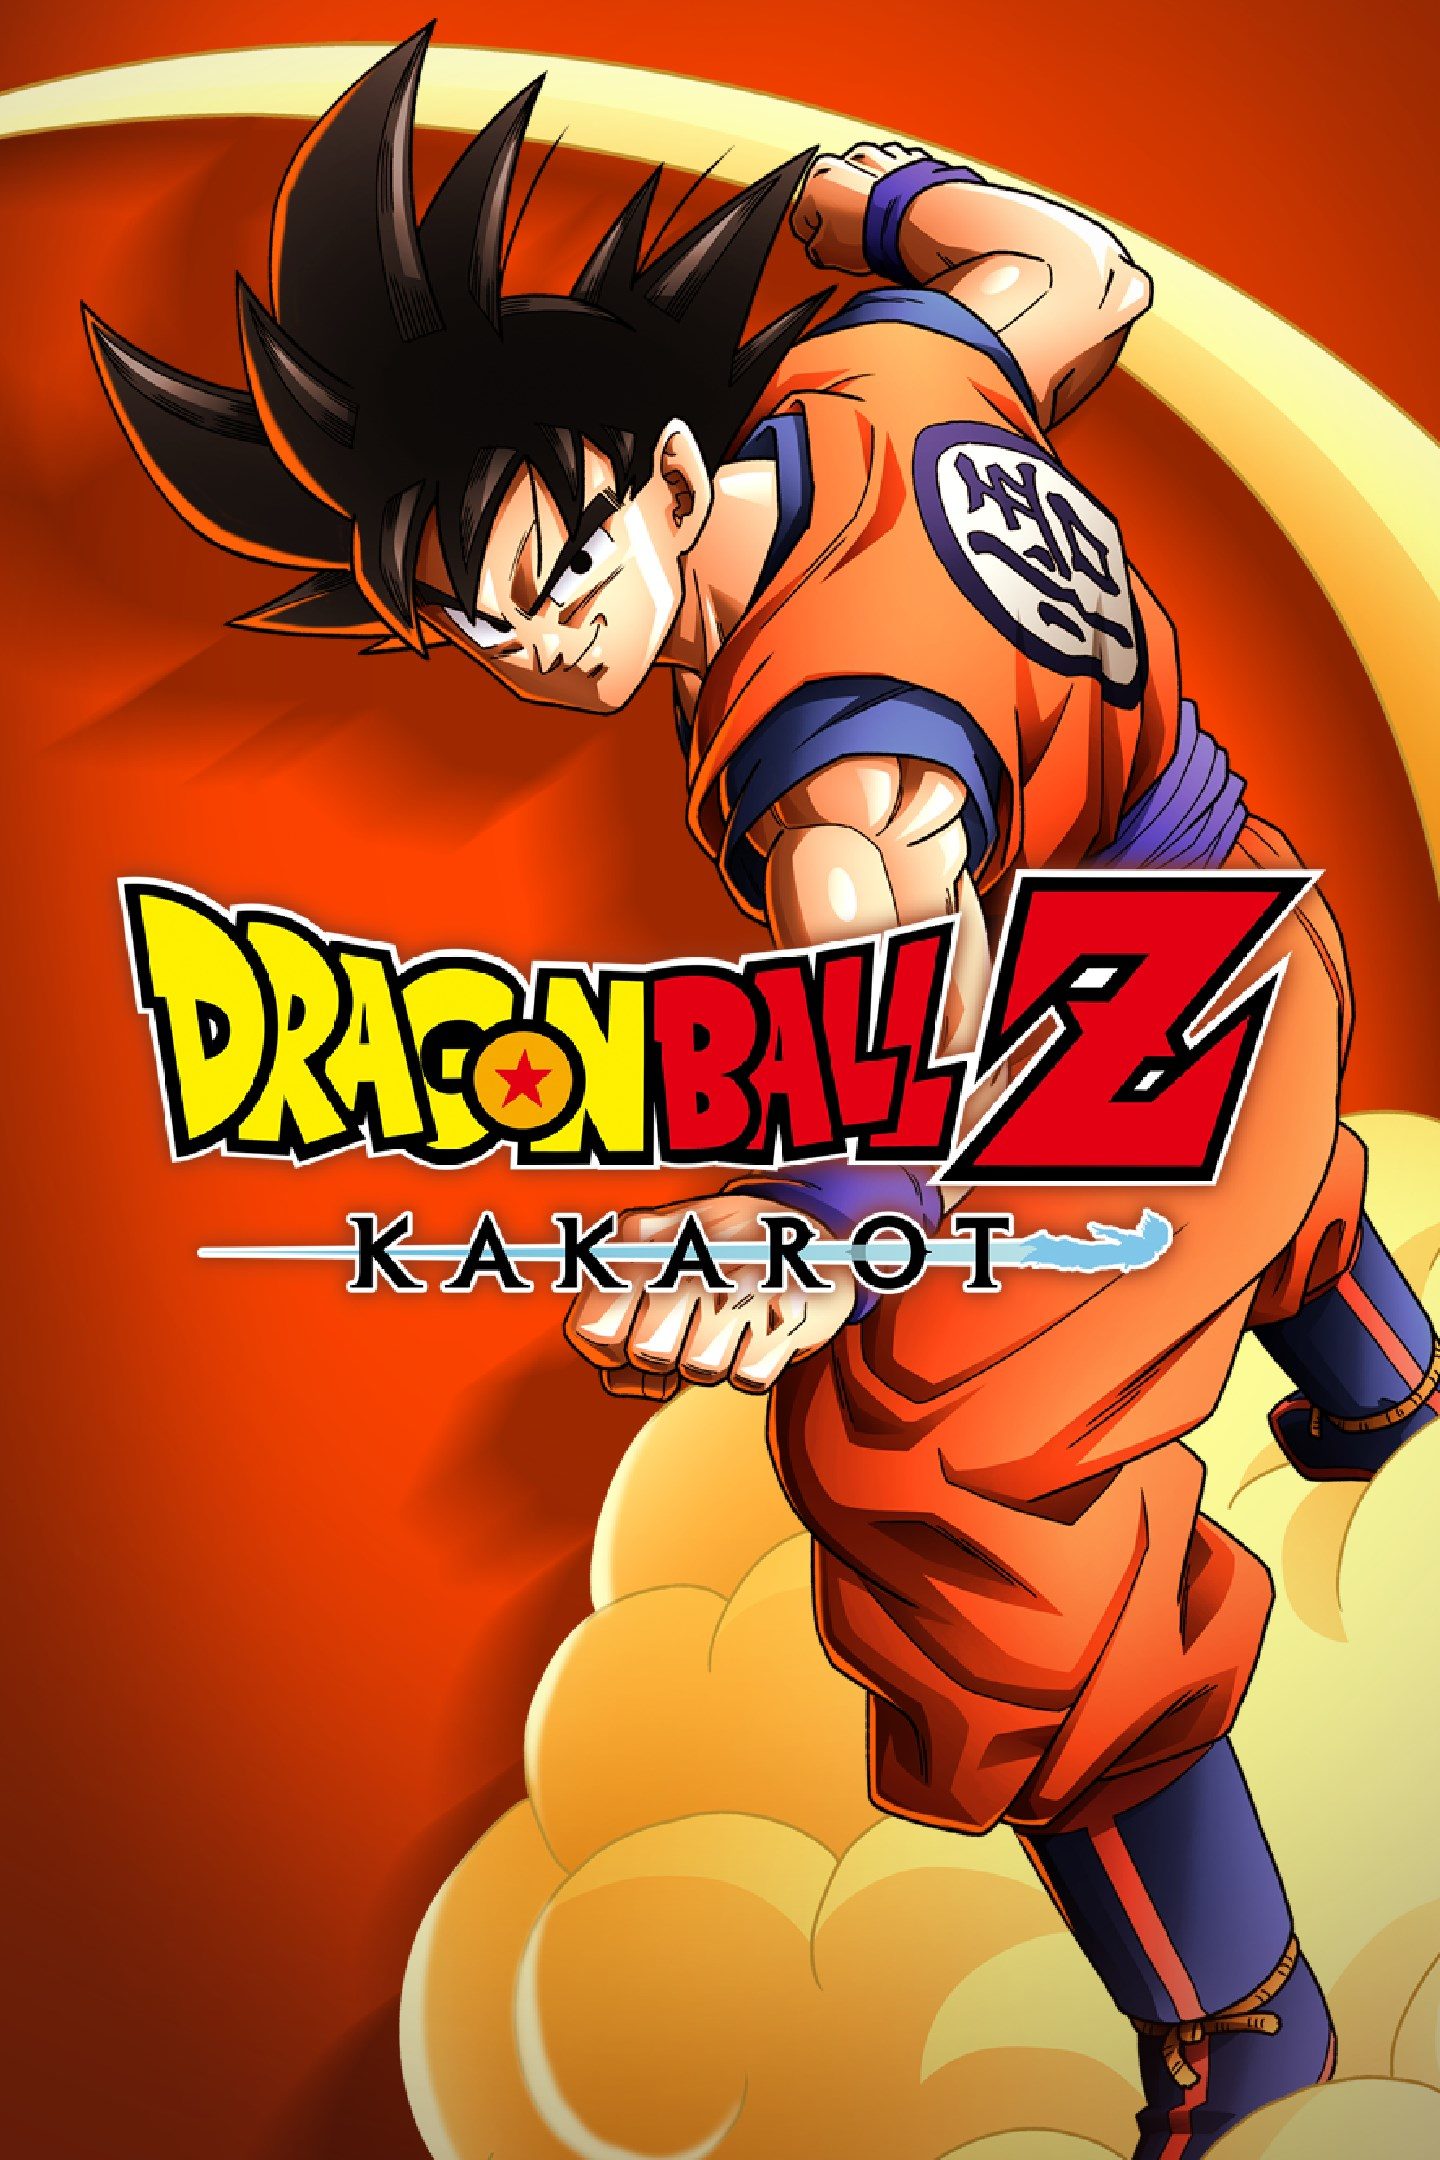 Dragon Ball Z: Kakarot Overview | Gamer Guides